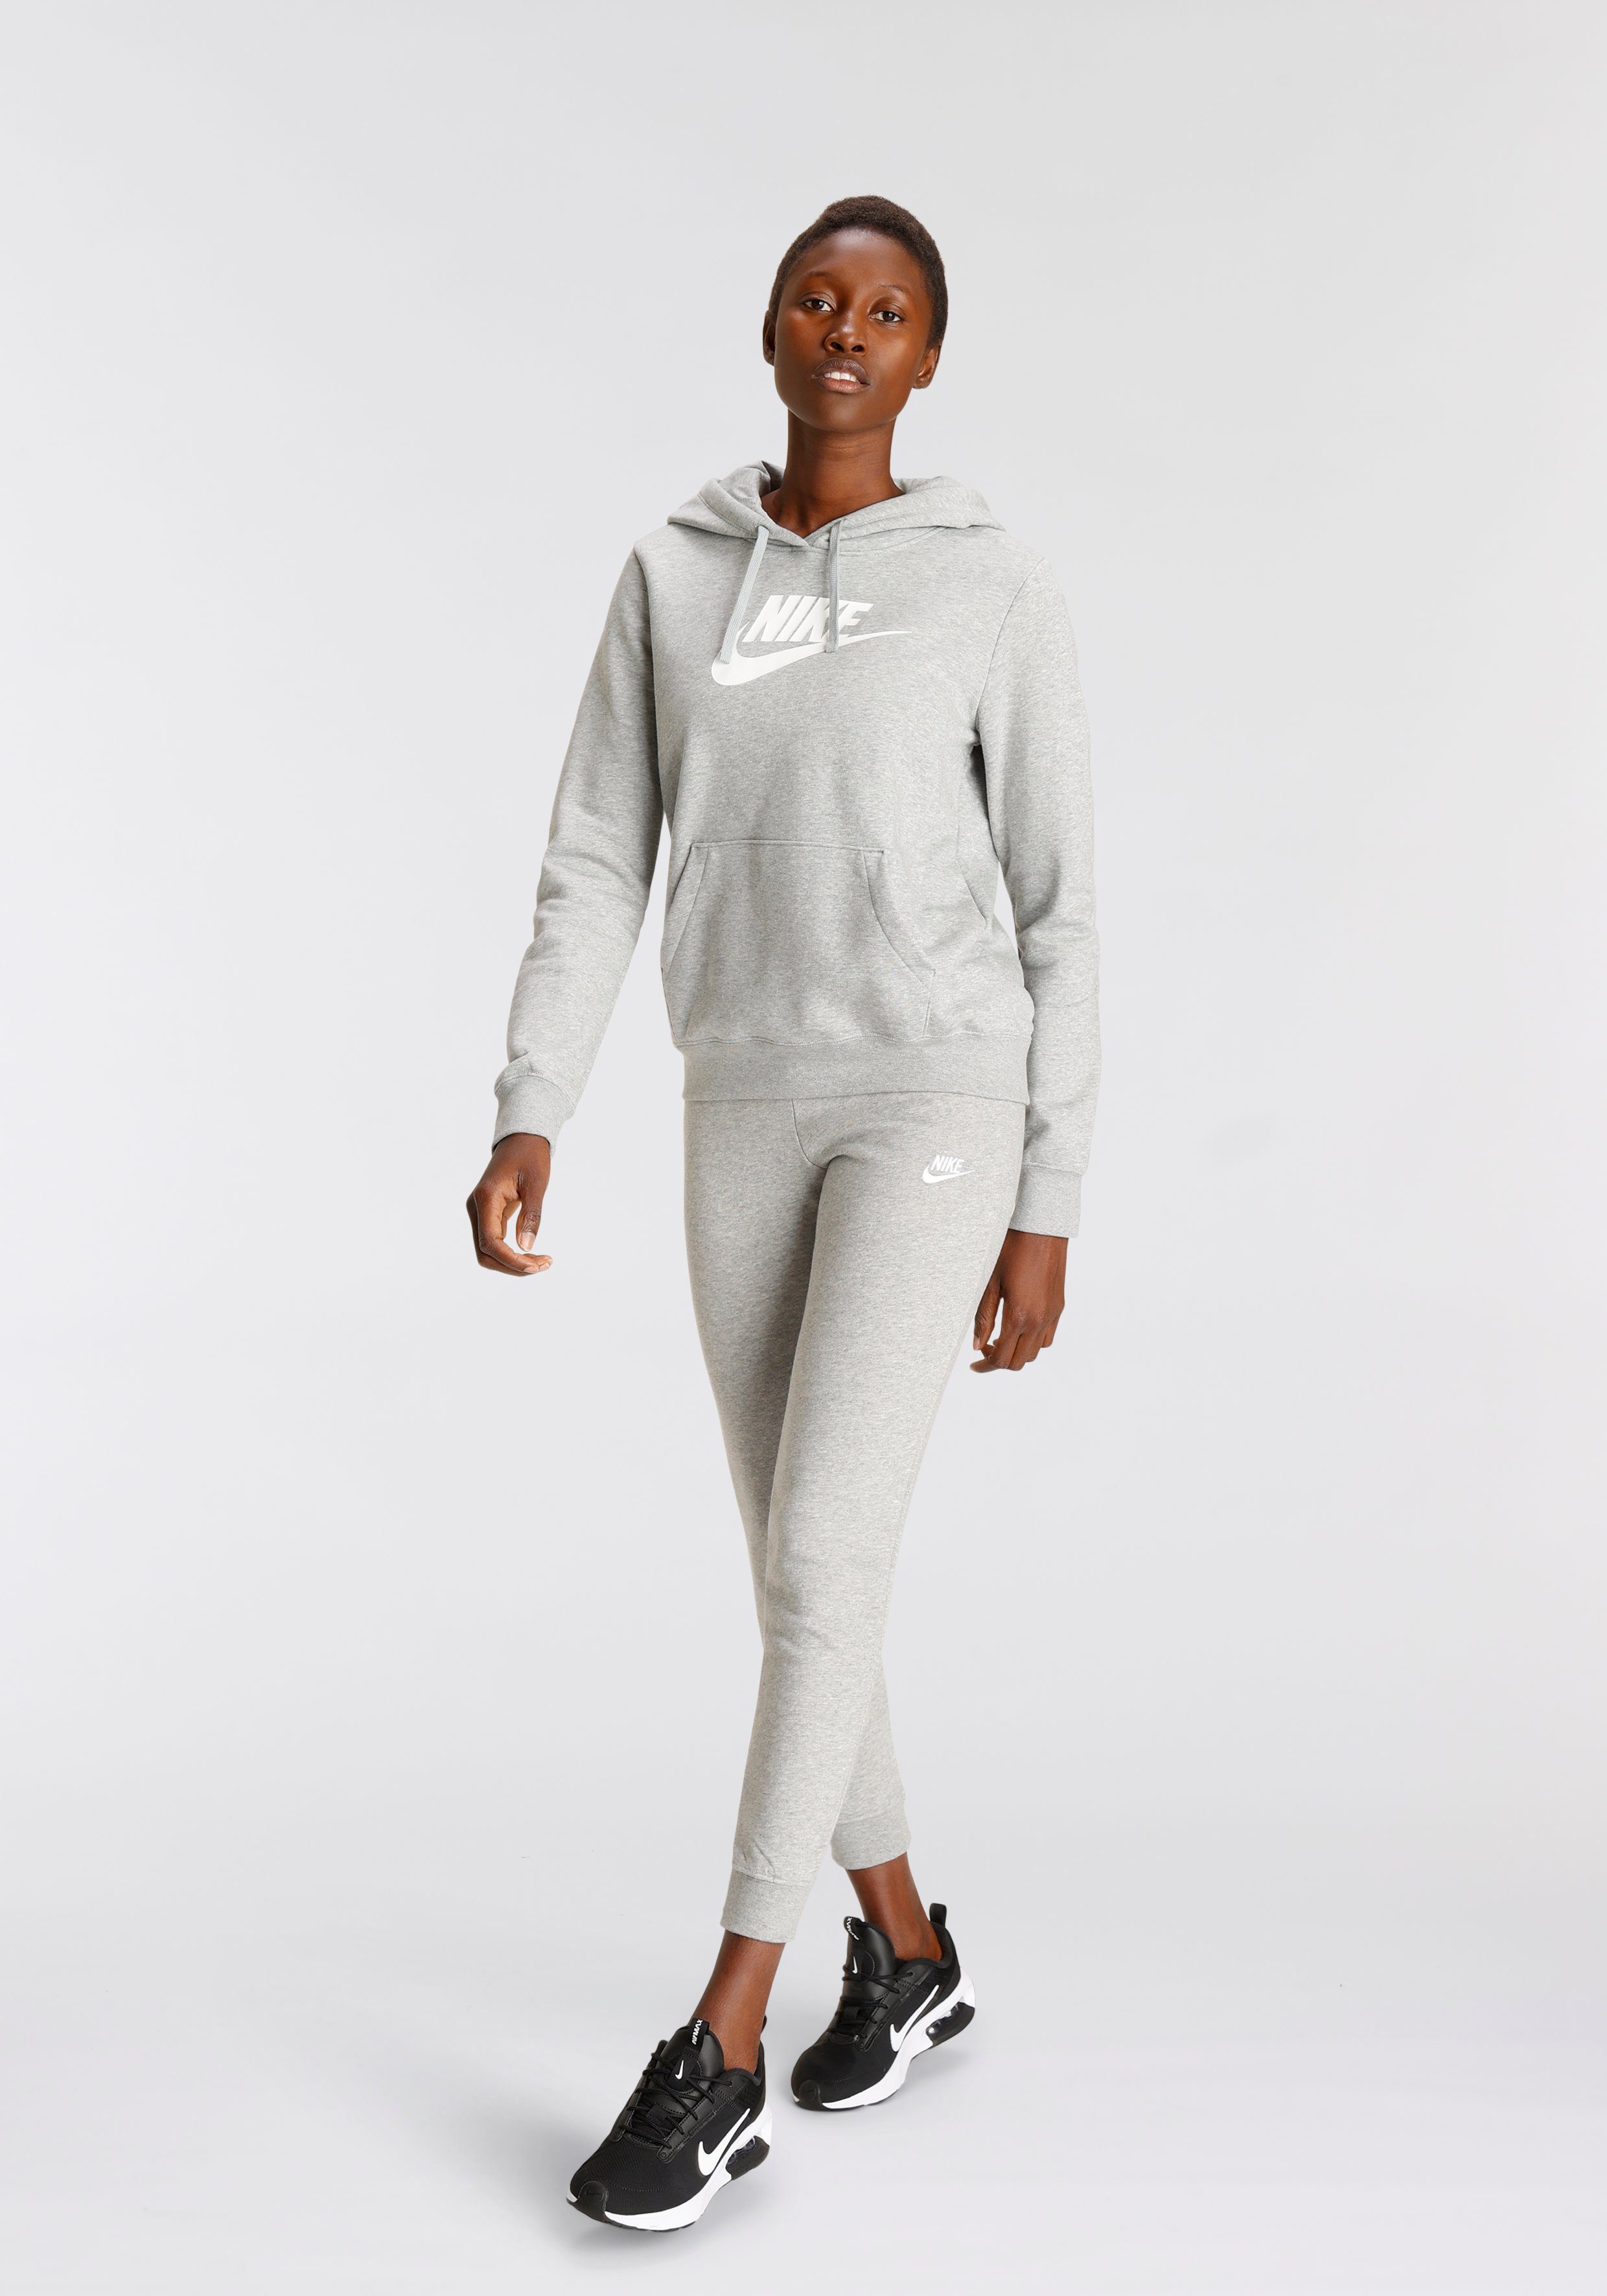 Sportswear GREY HEATHER/WHITE Women's Pullover Kapuzensweatshirt Hoodie DK Logo Club Nike Fleece